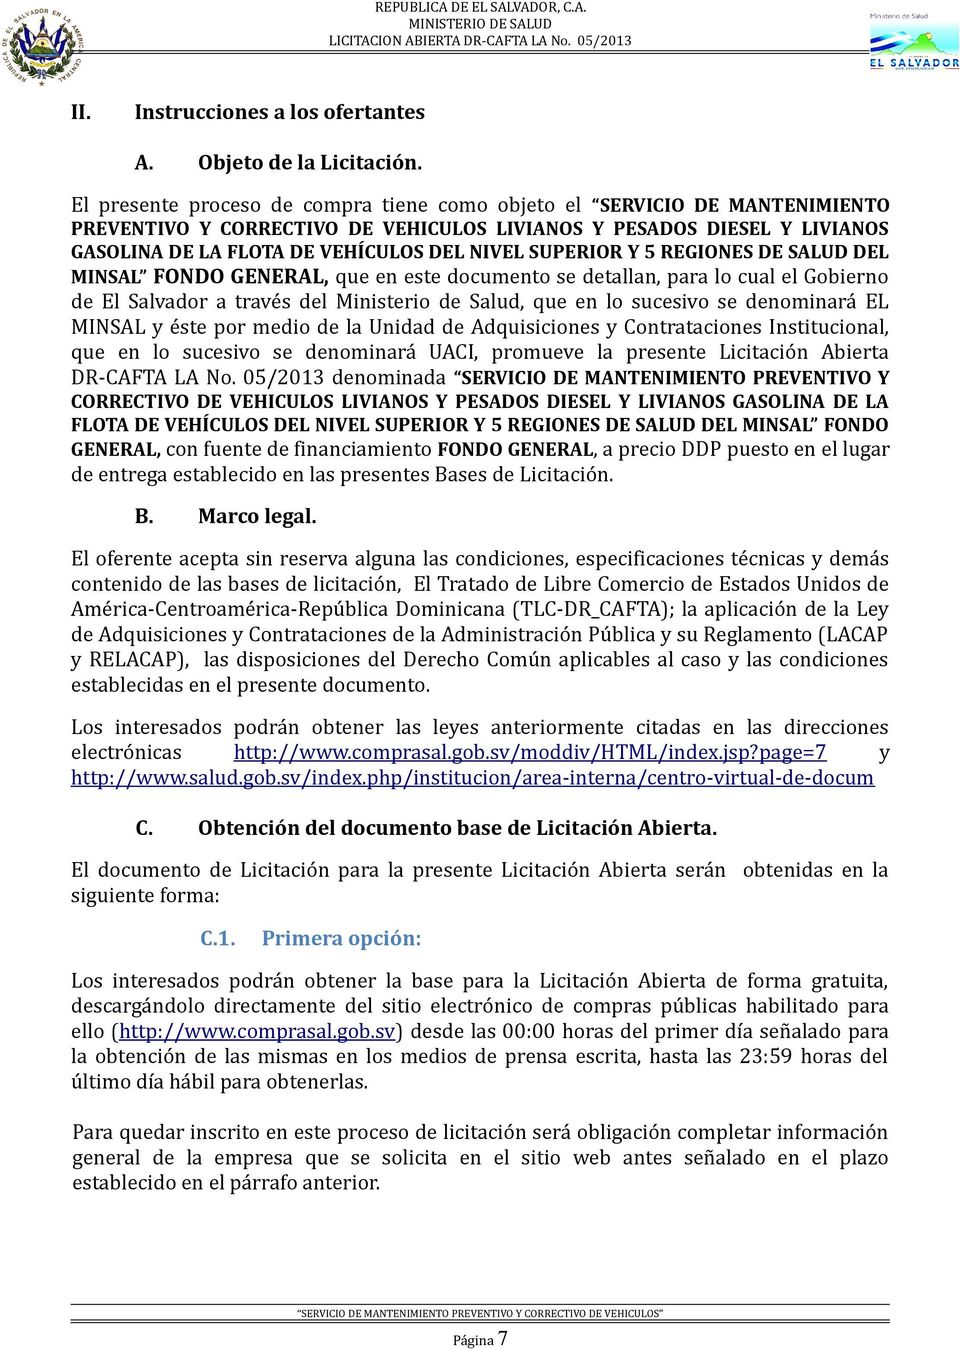 SUPERIOR Y 5 REGIONES DE SALUD DEL MINSAL FONDO GENERAL, que en este documento se detallan, para lo cual el Gobierno de El Salvador a través del Ministerio de Salud, que en lo sucesivo se denominará